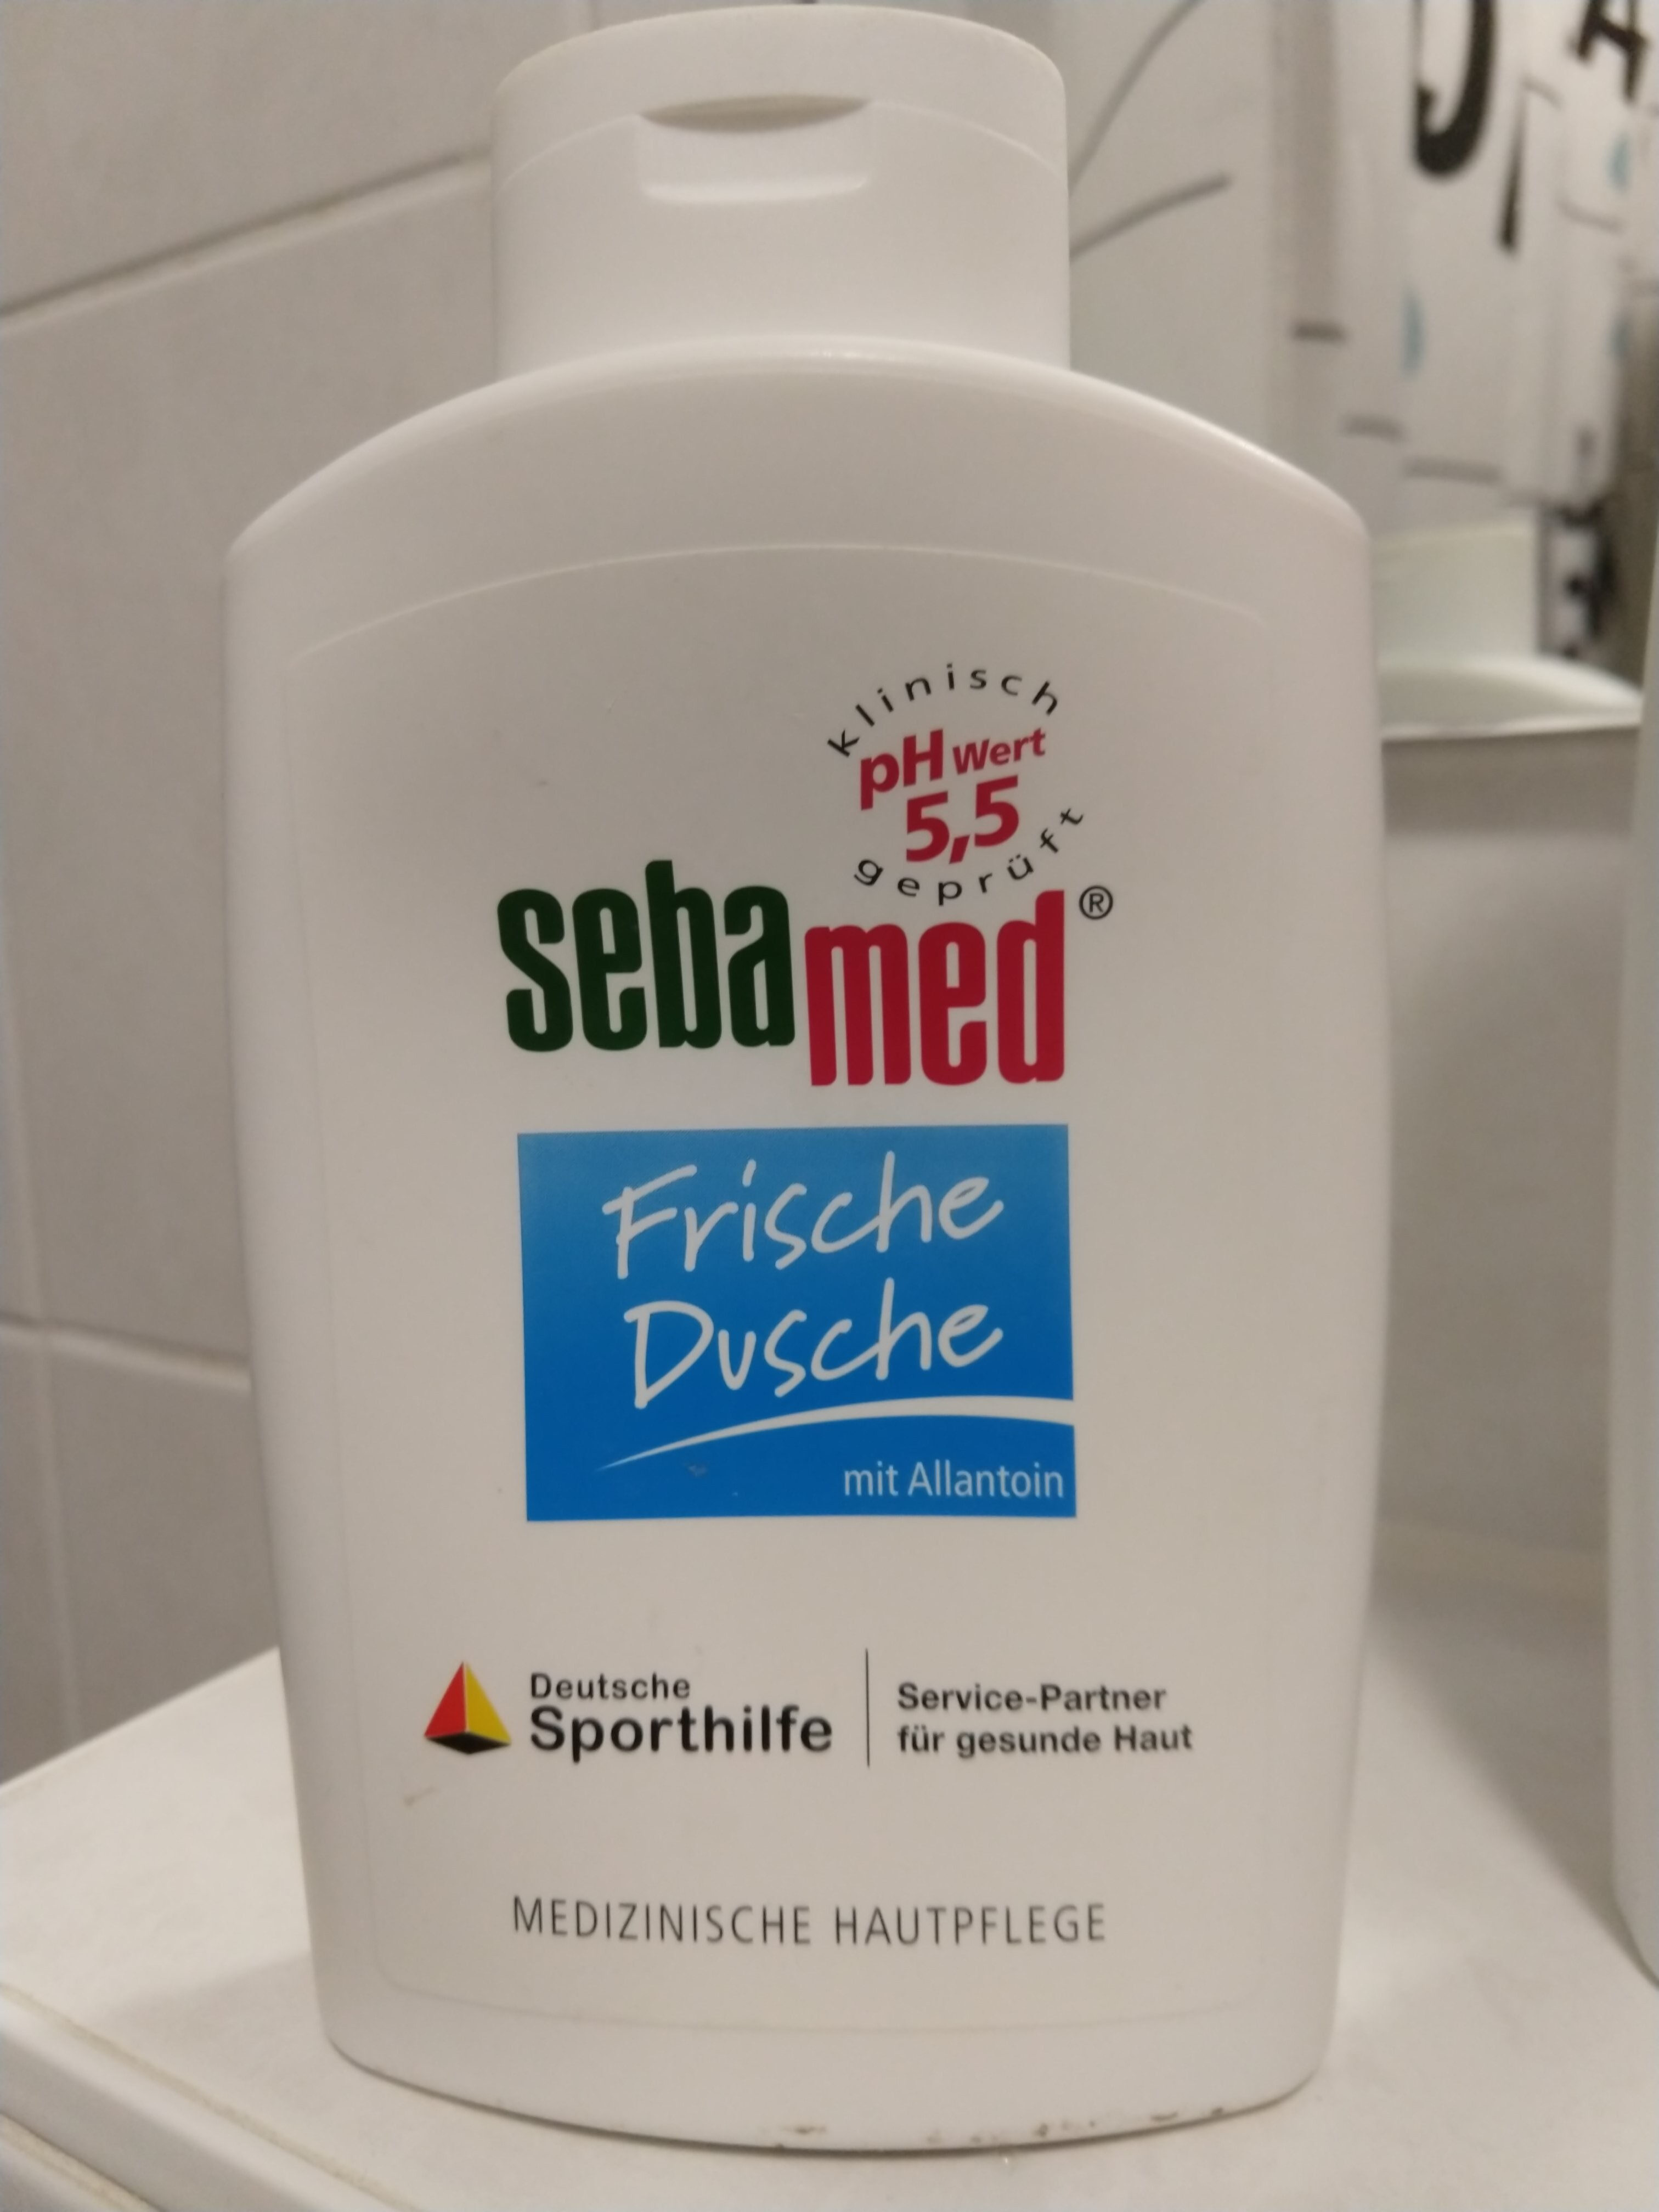 sebamed Frische Dusche - Produkt - de